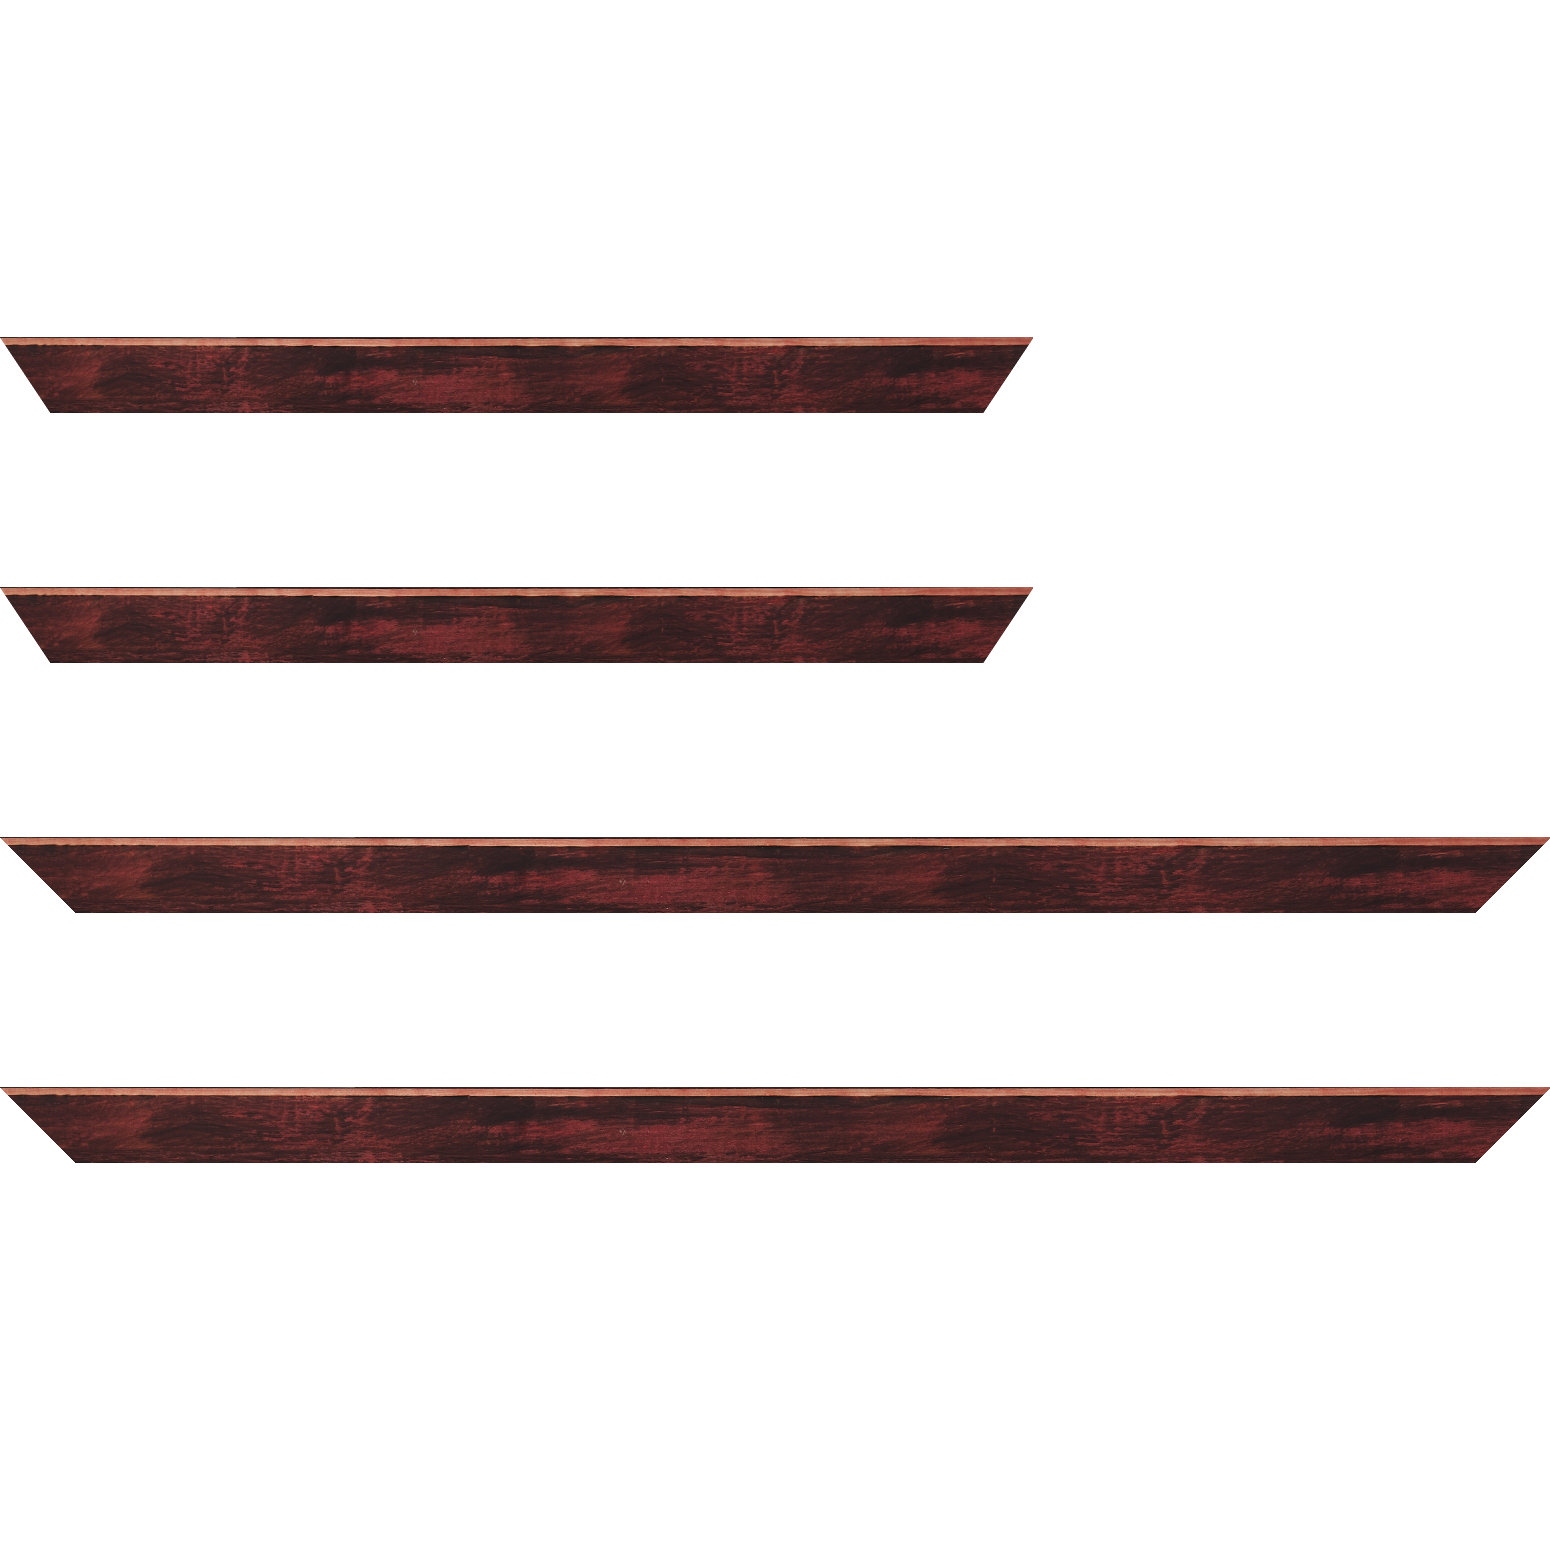 Baguette bois profil arrondi en pente plongeant largeur 2.4cm couleur bordeaux effet ressuyé, angle du cadre extérieur filet naturel - 18x24